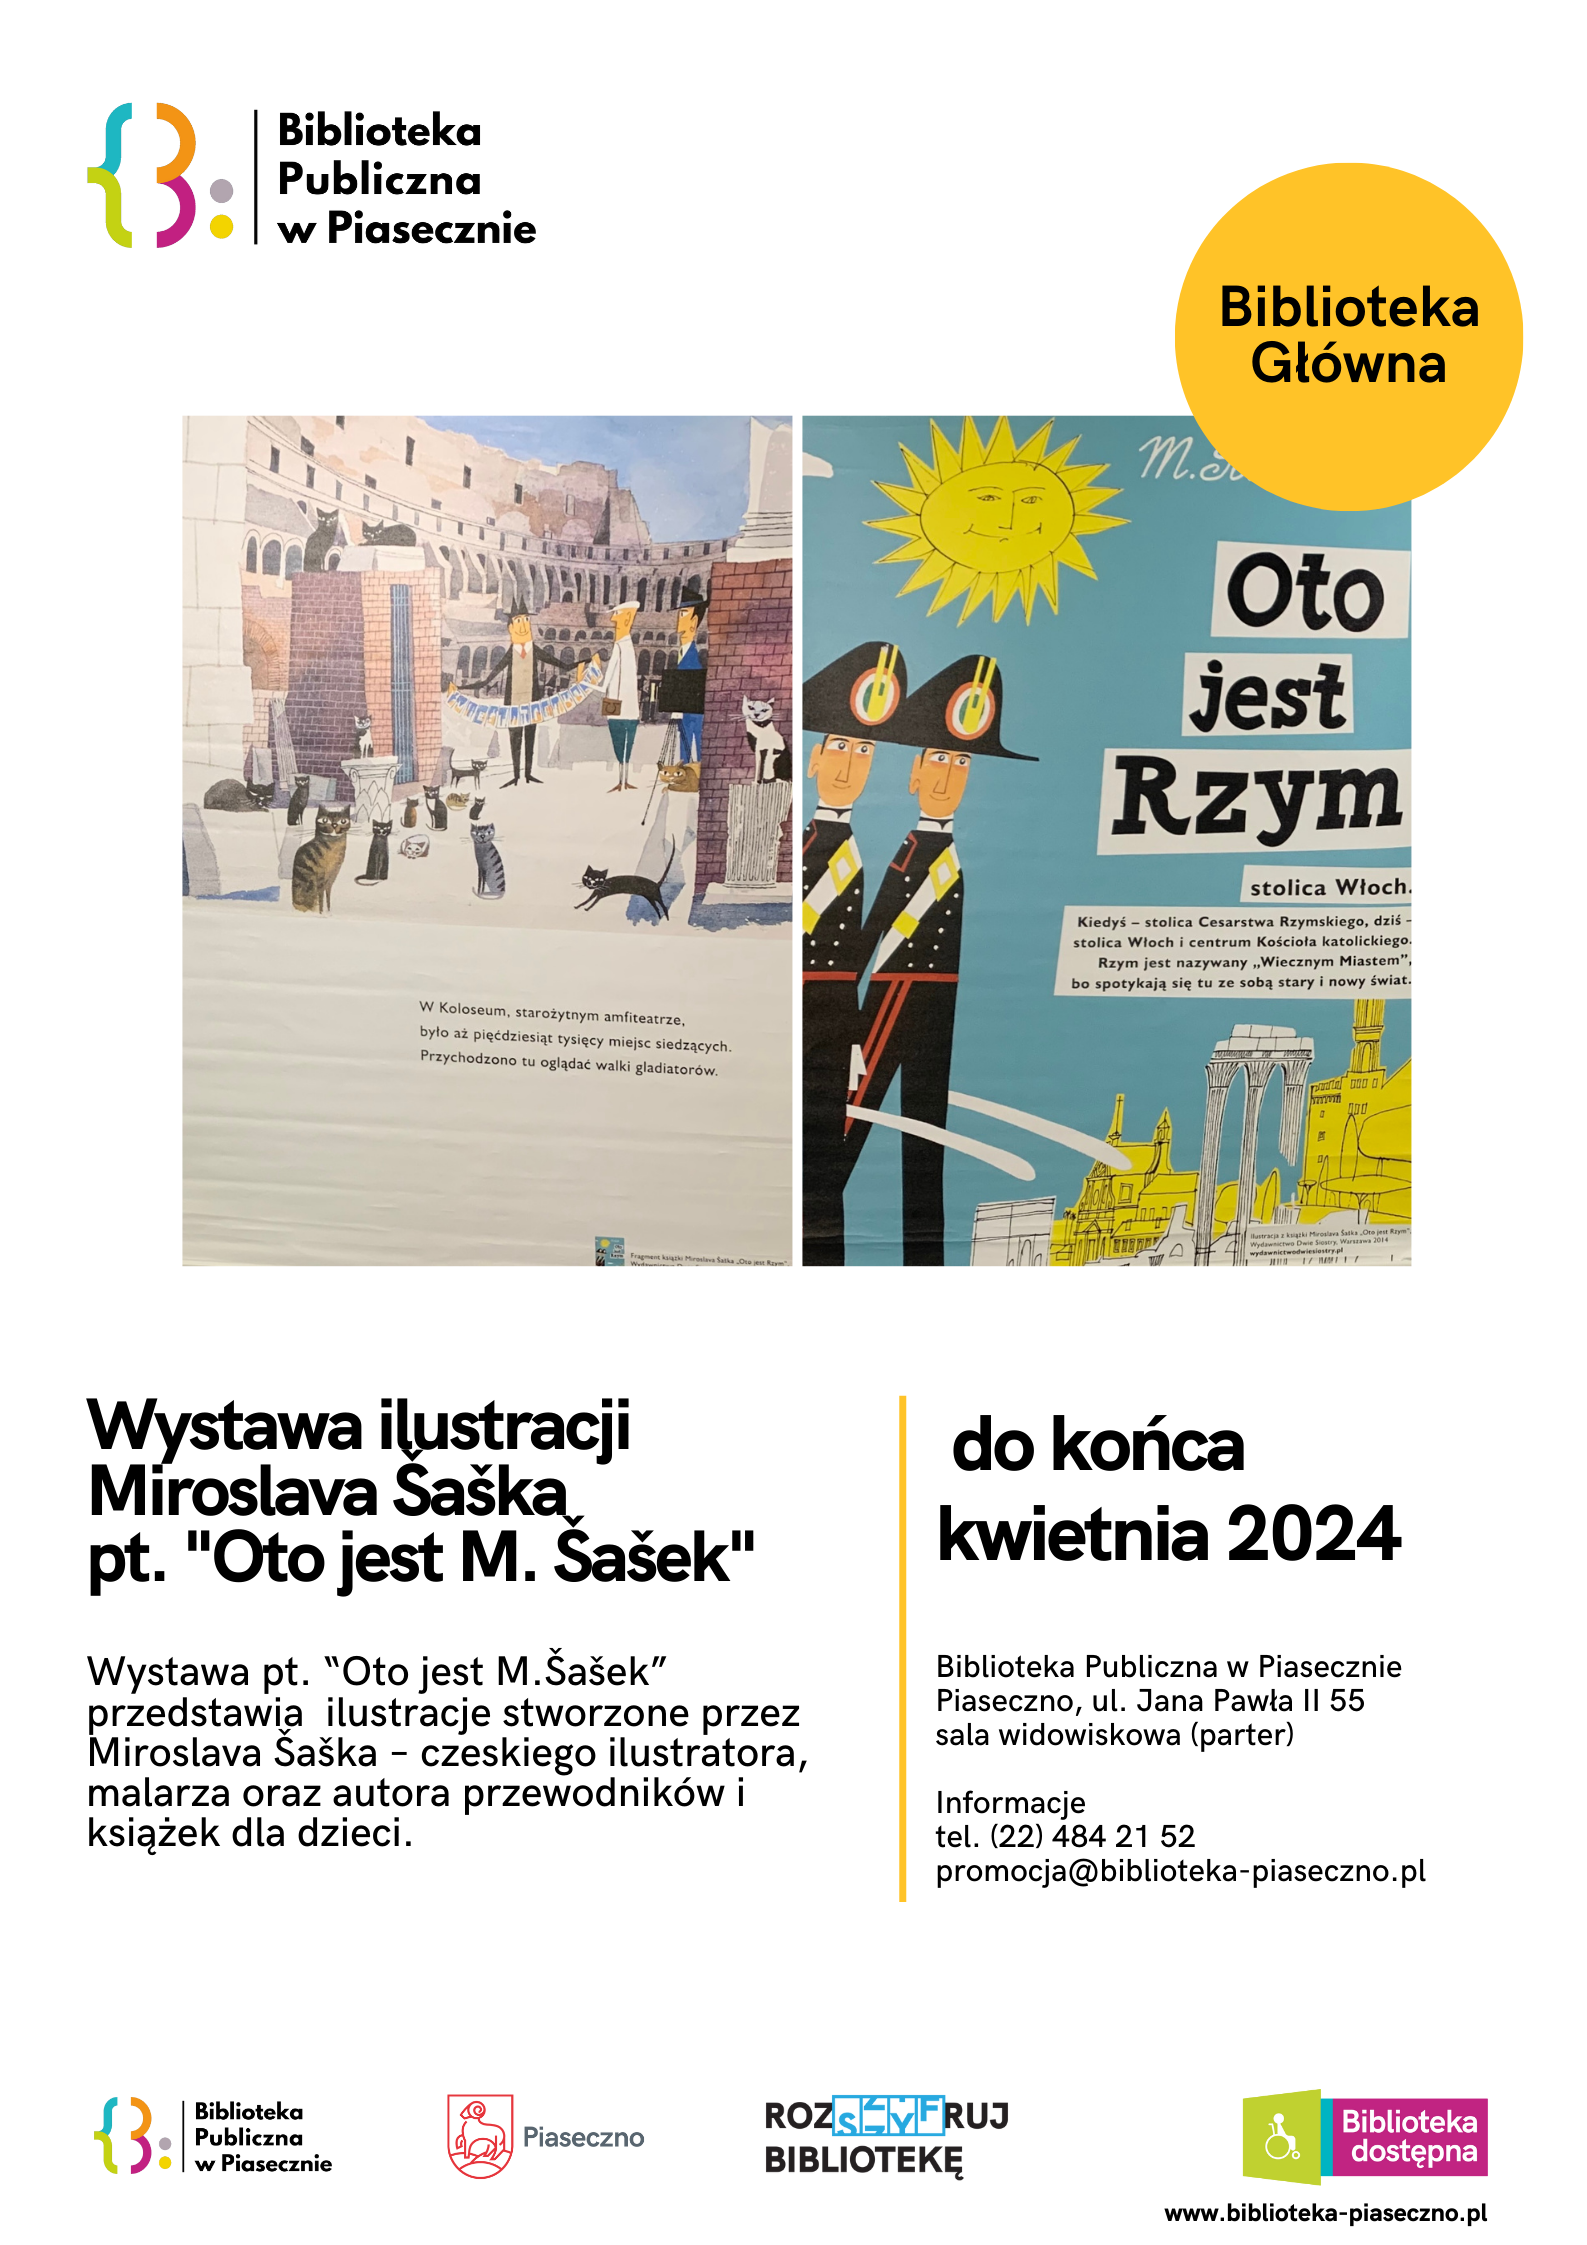 Plakat promujący wystawę Miroslava Saska pt. "Oto jest M. Sasek" w Bibliotece Publicznej w Piasecznie